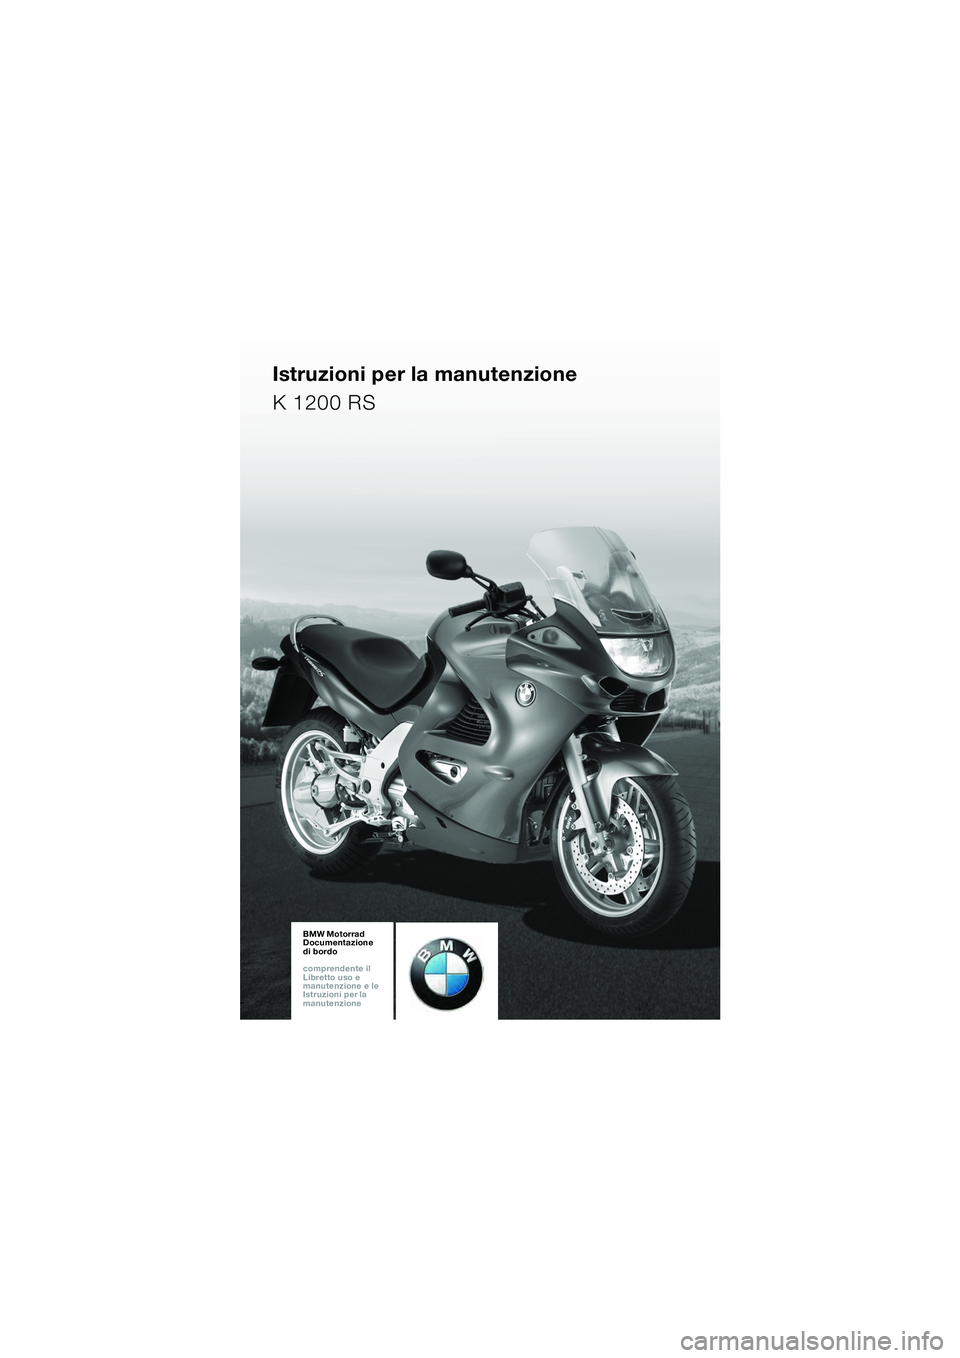 BMW MOTORRAD K 1200 RS 2004  Libretto di uso e manutenzione (in Italian) 1
BMW Motorrad
Documentazione  
di bordo
comprendente il  
Libretto uso e  
manutenzione e le  
Istruzioni per la  
manutenzioneBMW Motorrad
Documentazione  
di bordo
comprendente il  
Libretto uso e 